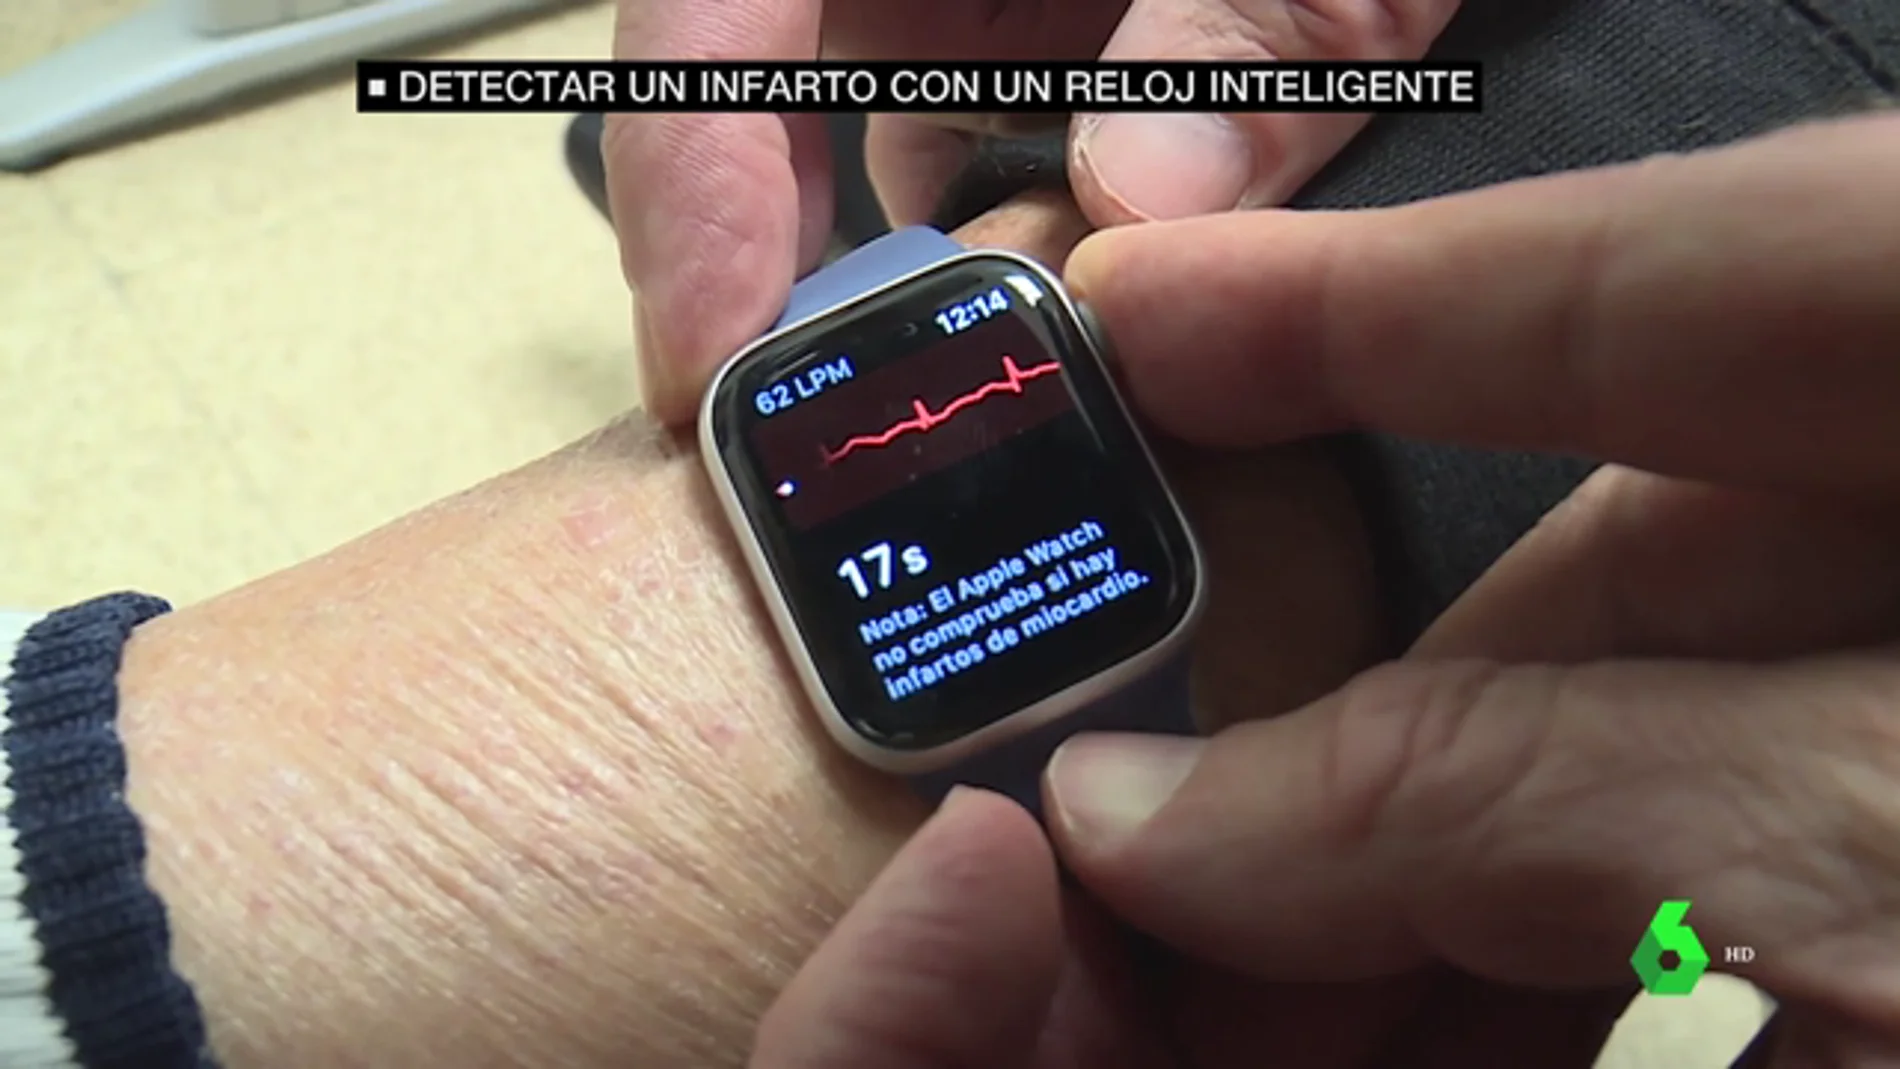 Bajar Mucho bien bueno medida Detectar un infarto con un reloj inteligente es posible e igual de fiable  que con pruebas médicas